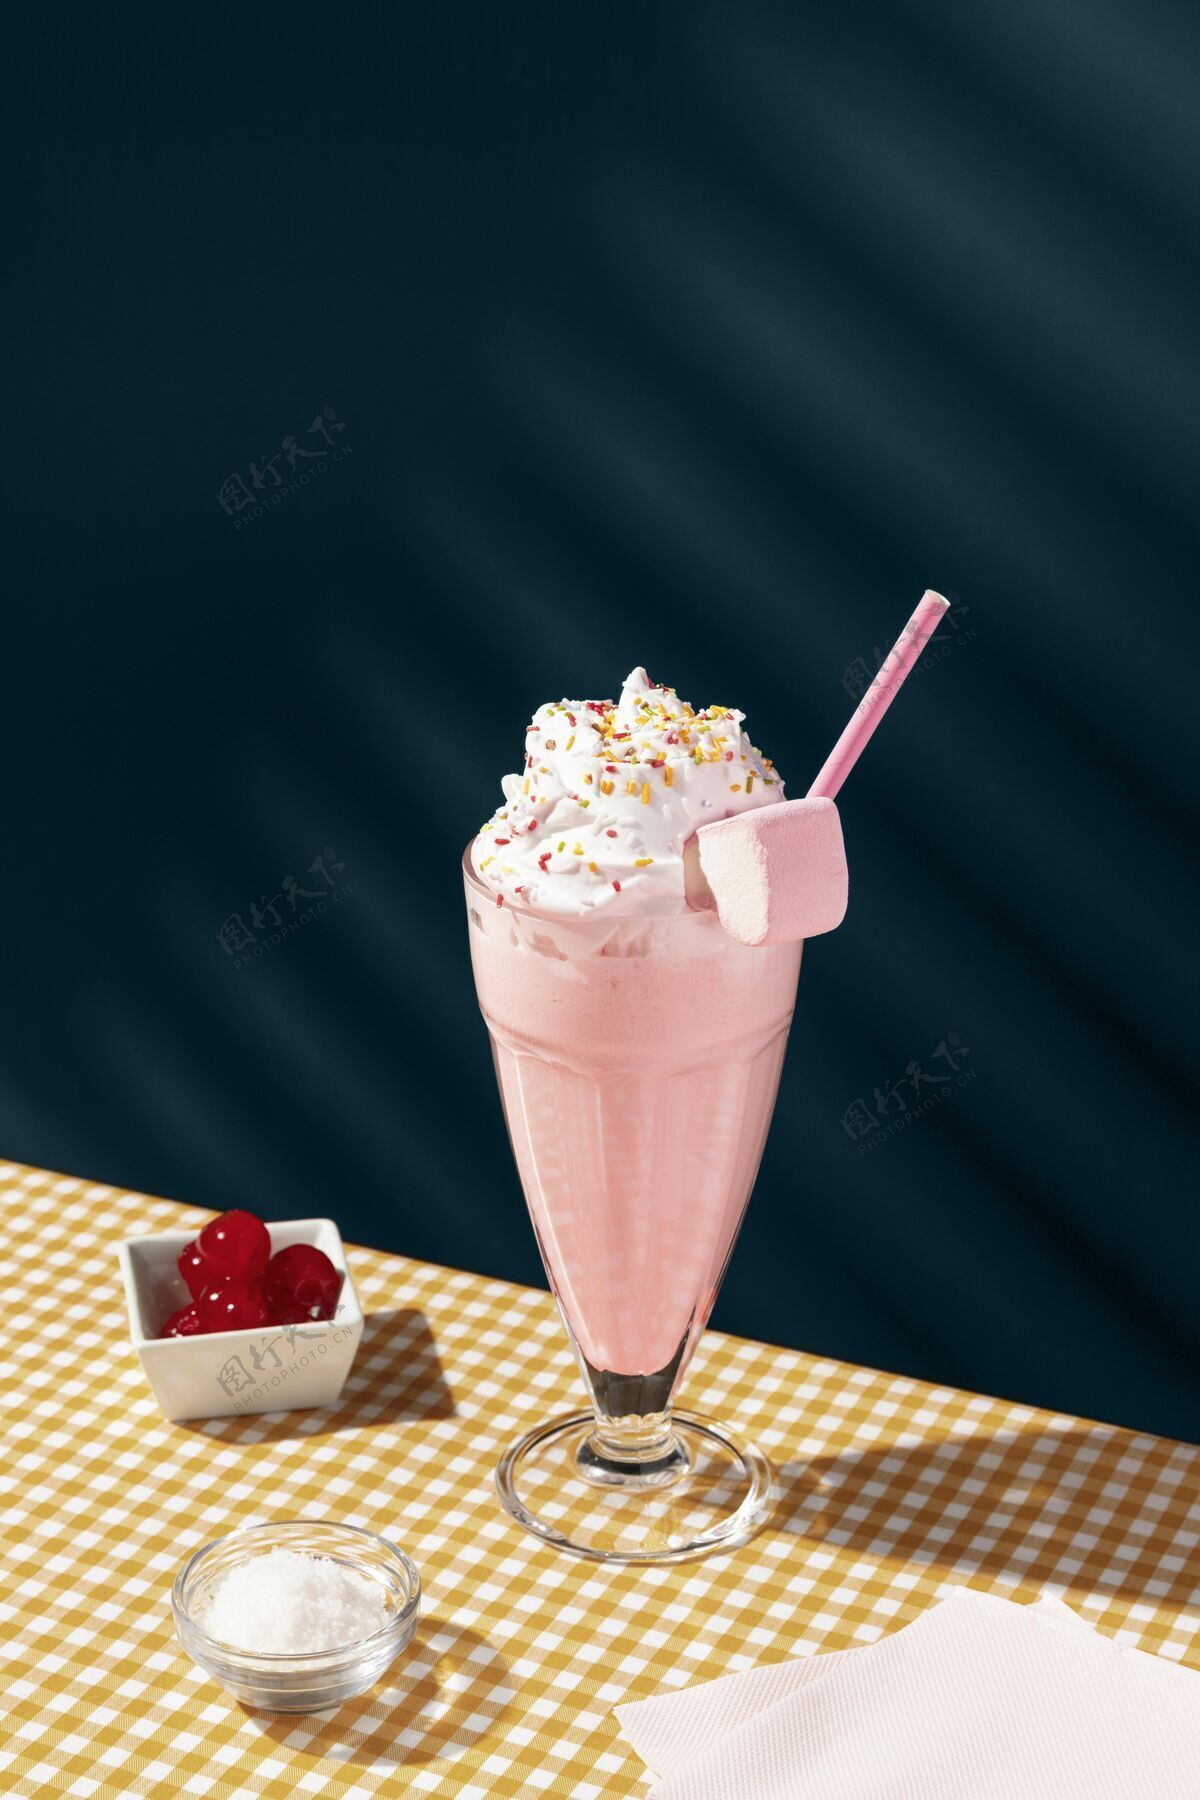 新鲜饮料桌上有草莓奶昔草莓奶昔美味饮料草莓